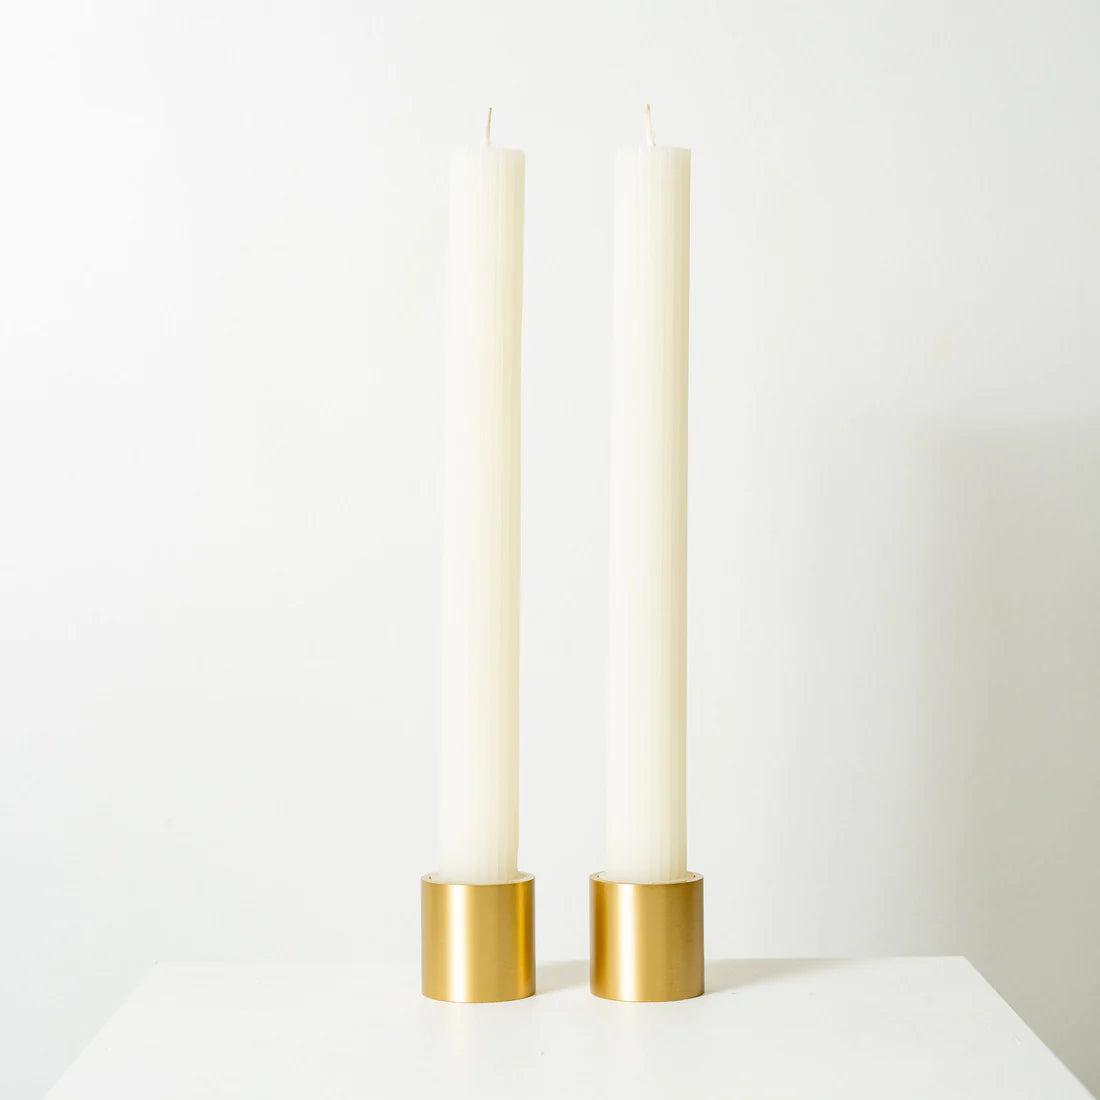 Australian Place Column Pillar Candles